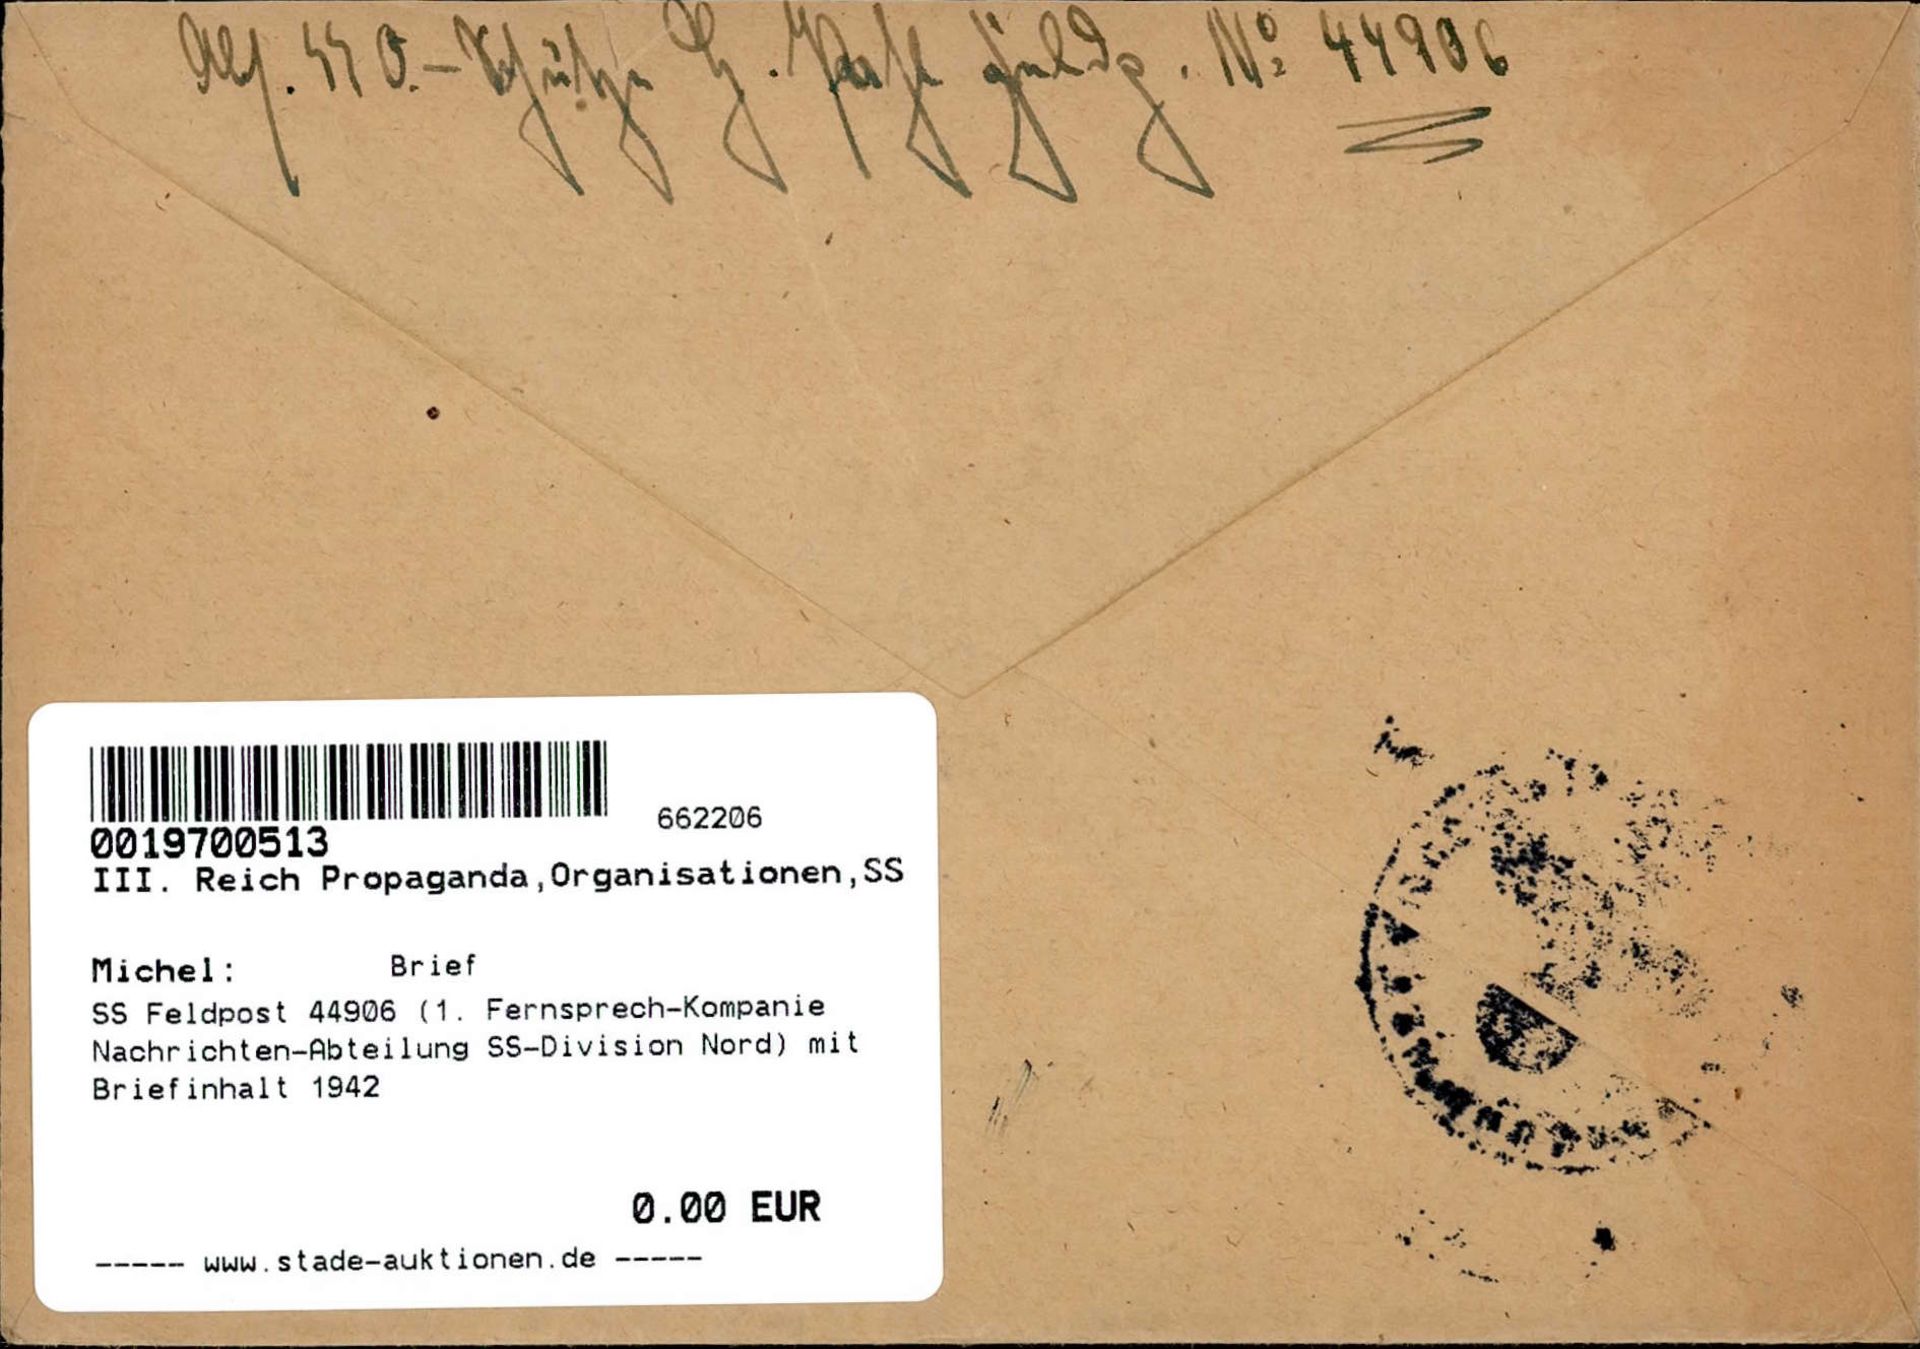 SS Feldpost 44906 (1. Fernsprech-Kompanie Nachrichten-Abteilung SS-Division Nord) mit Briefinhalt - Image 2 of 2